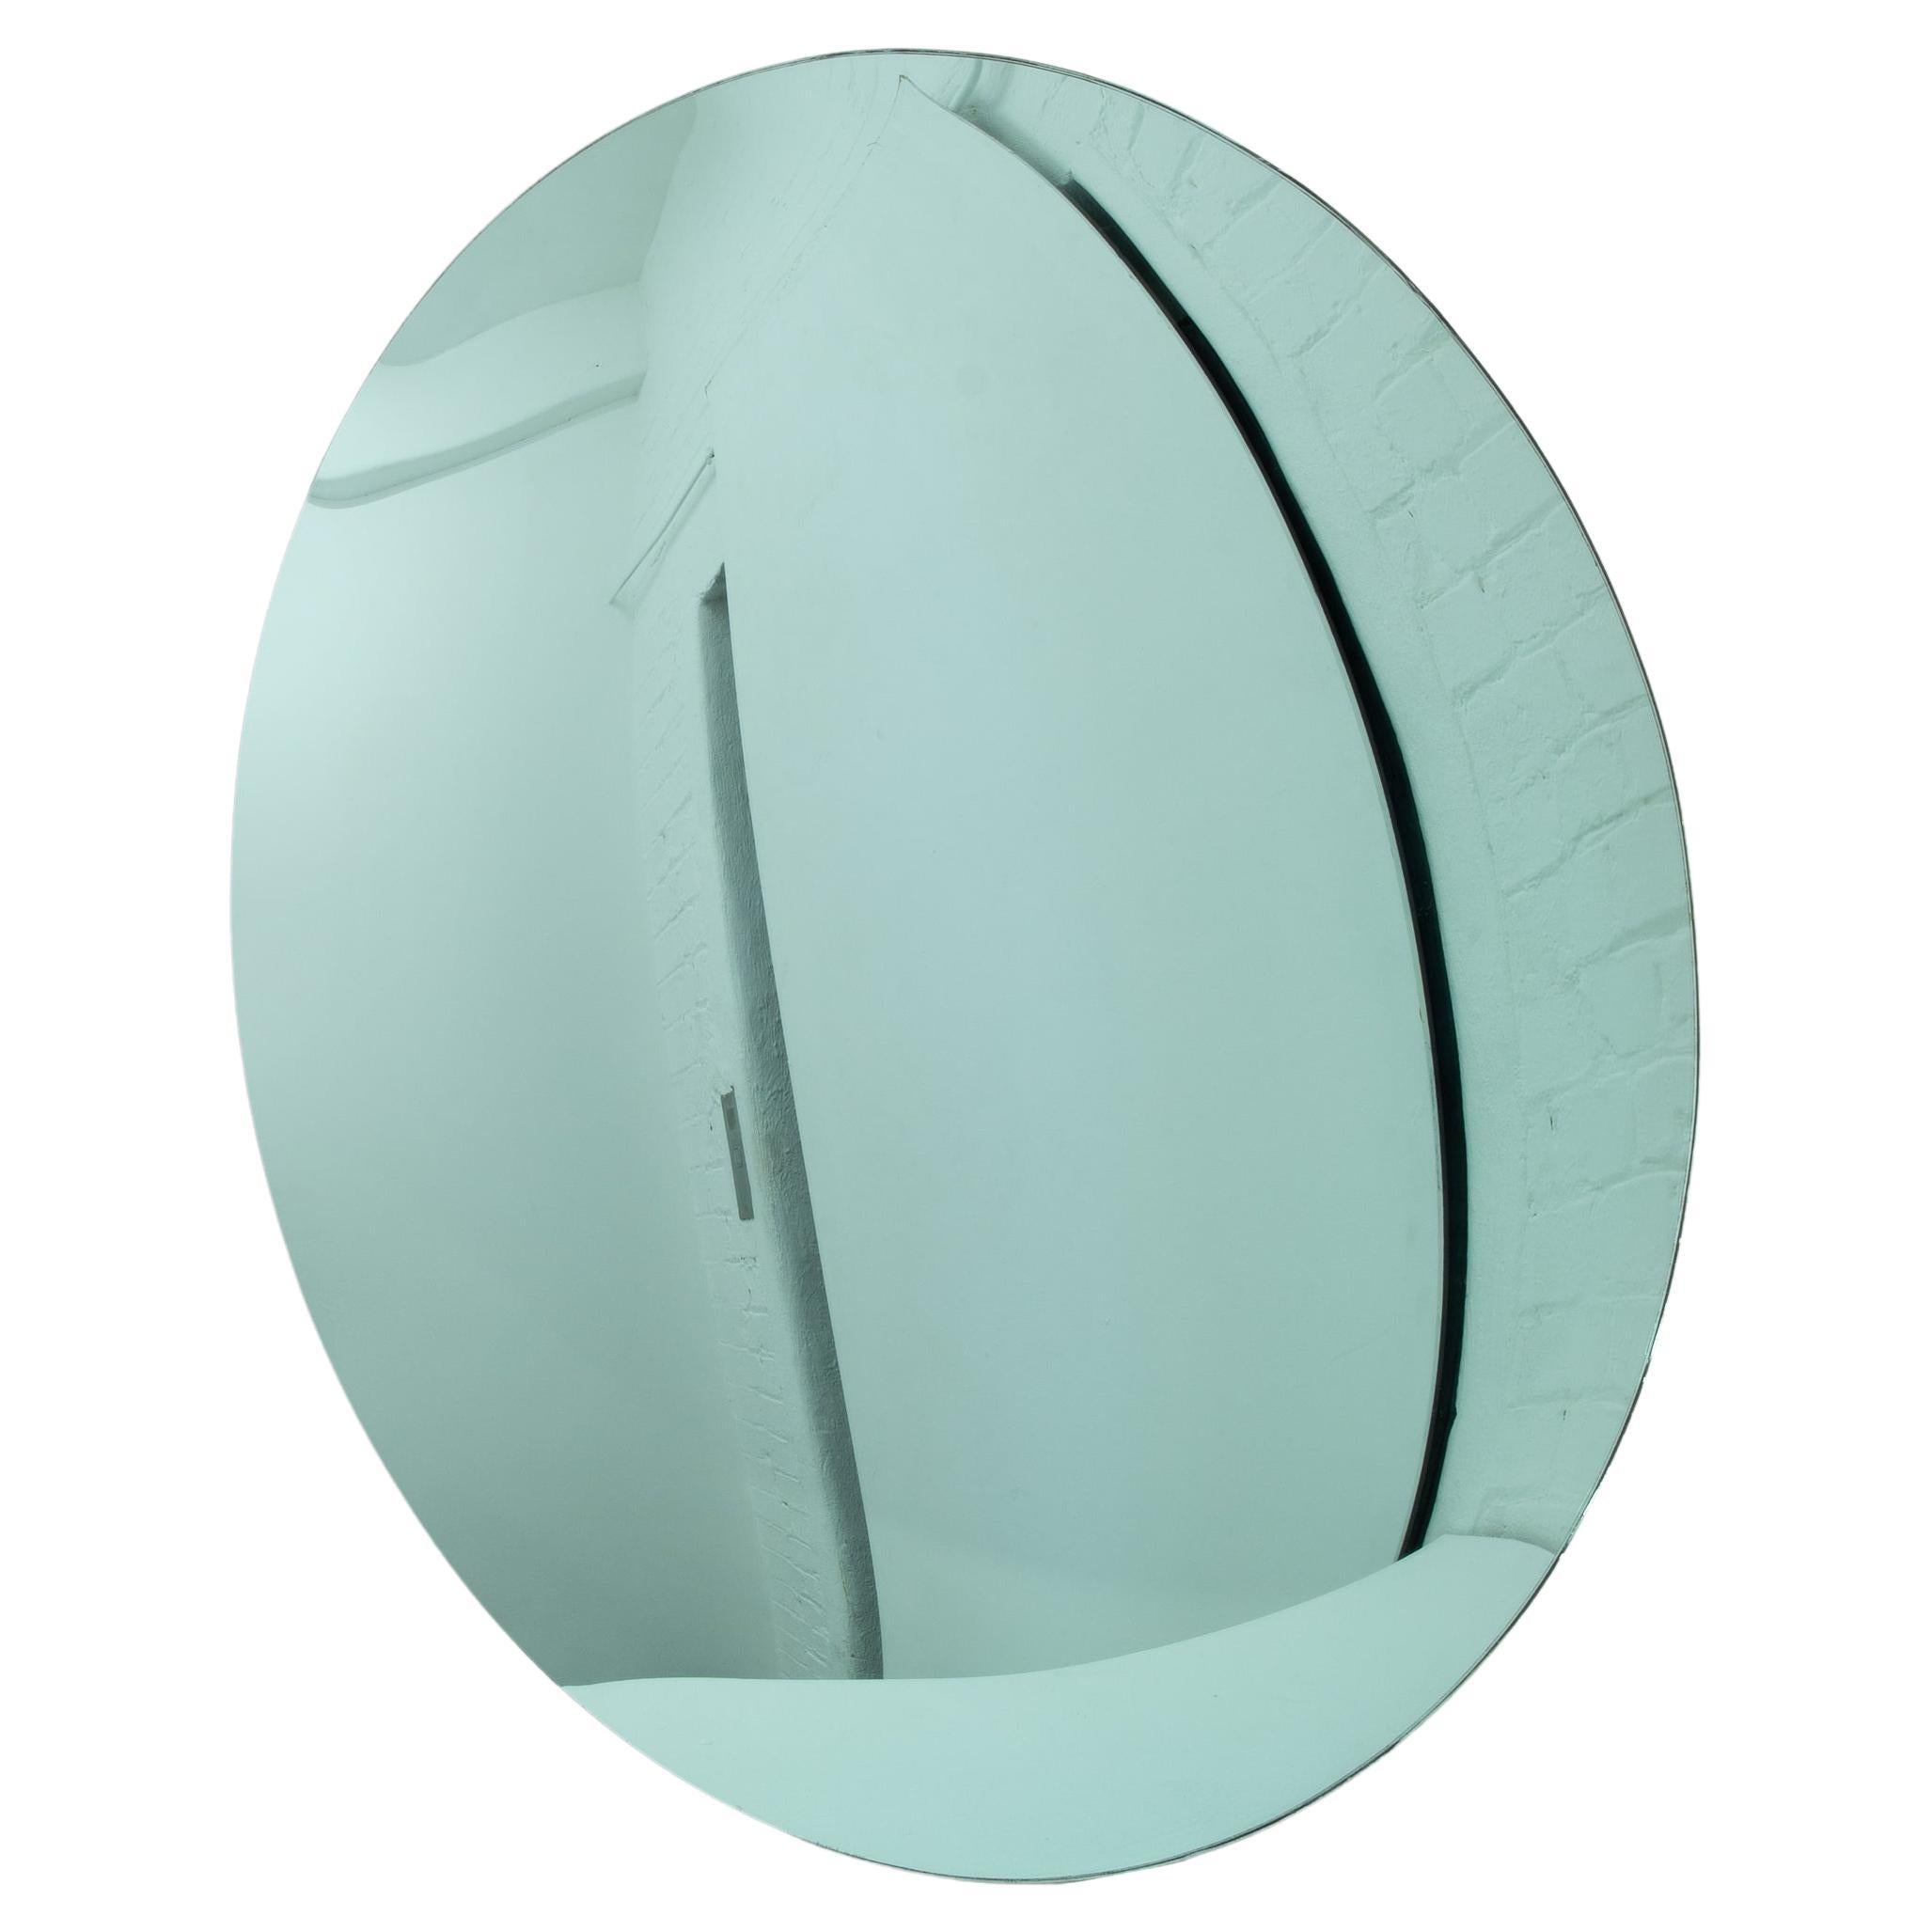 Orbis Convex Green Minimalist Frameless Round Mirror, Large